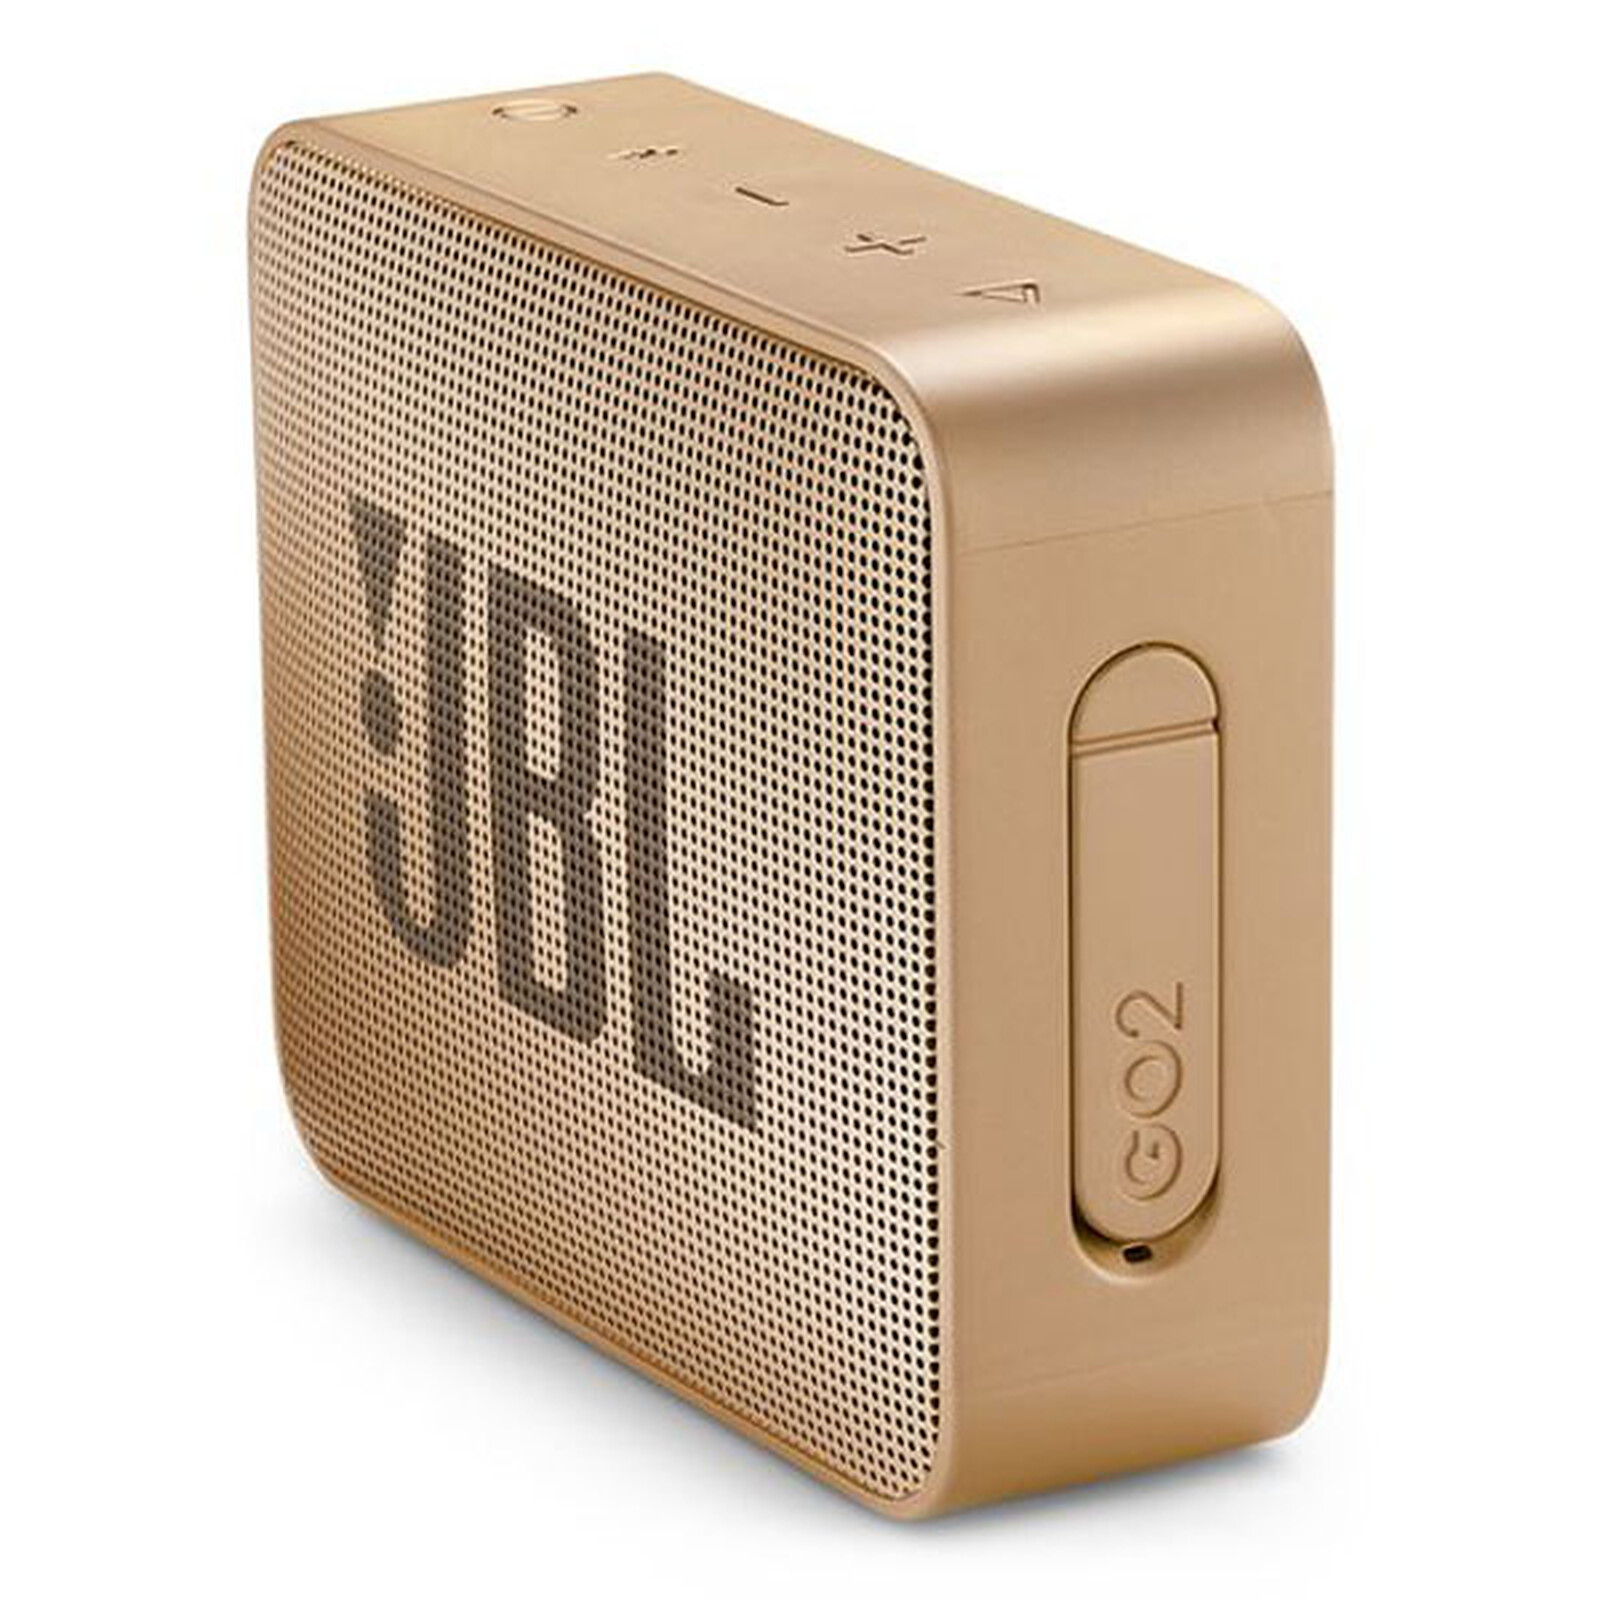 Enceinte JBL Go Essential noire : prix, avis, caractéristiques - Orange